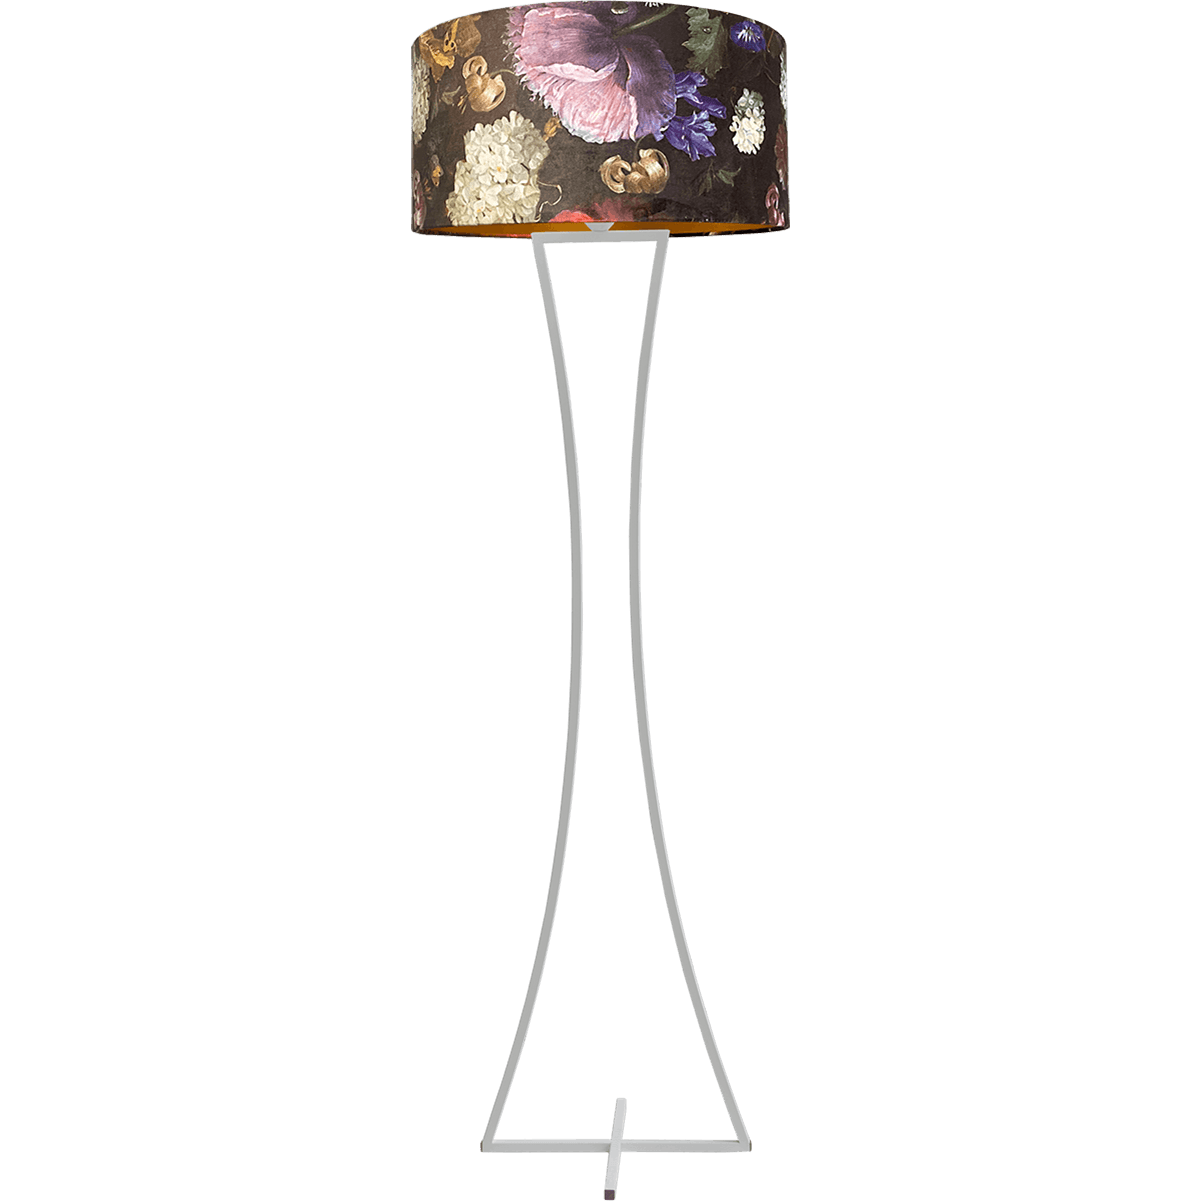 Vloerlamp Cross Woman wit structuur hoogte 158cm inclusief lampenkap met flowerenprint Artik flower 52/52/25 - MASTERLIGHT